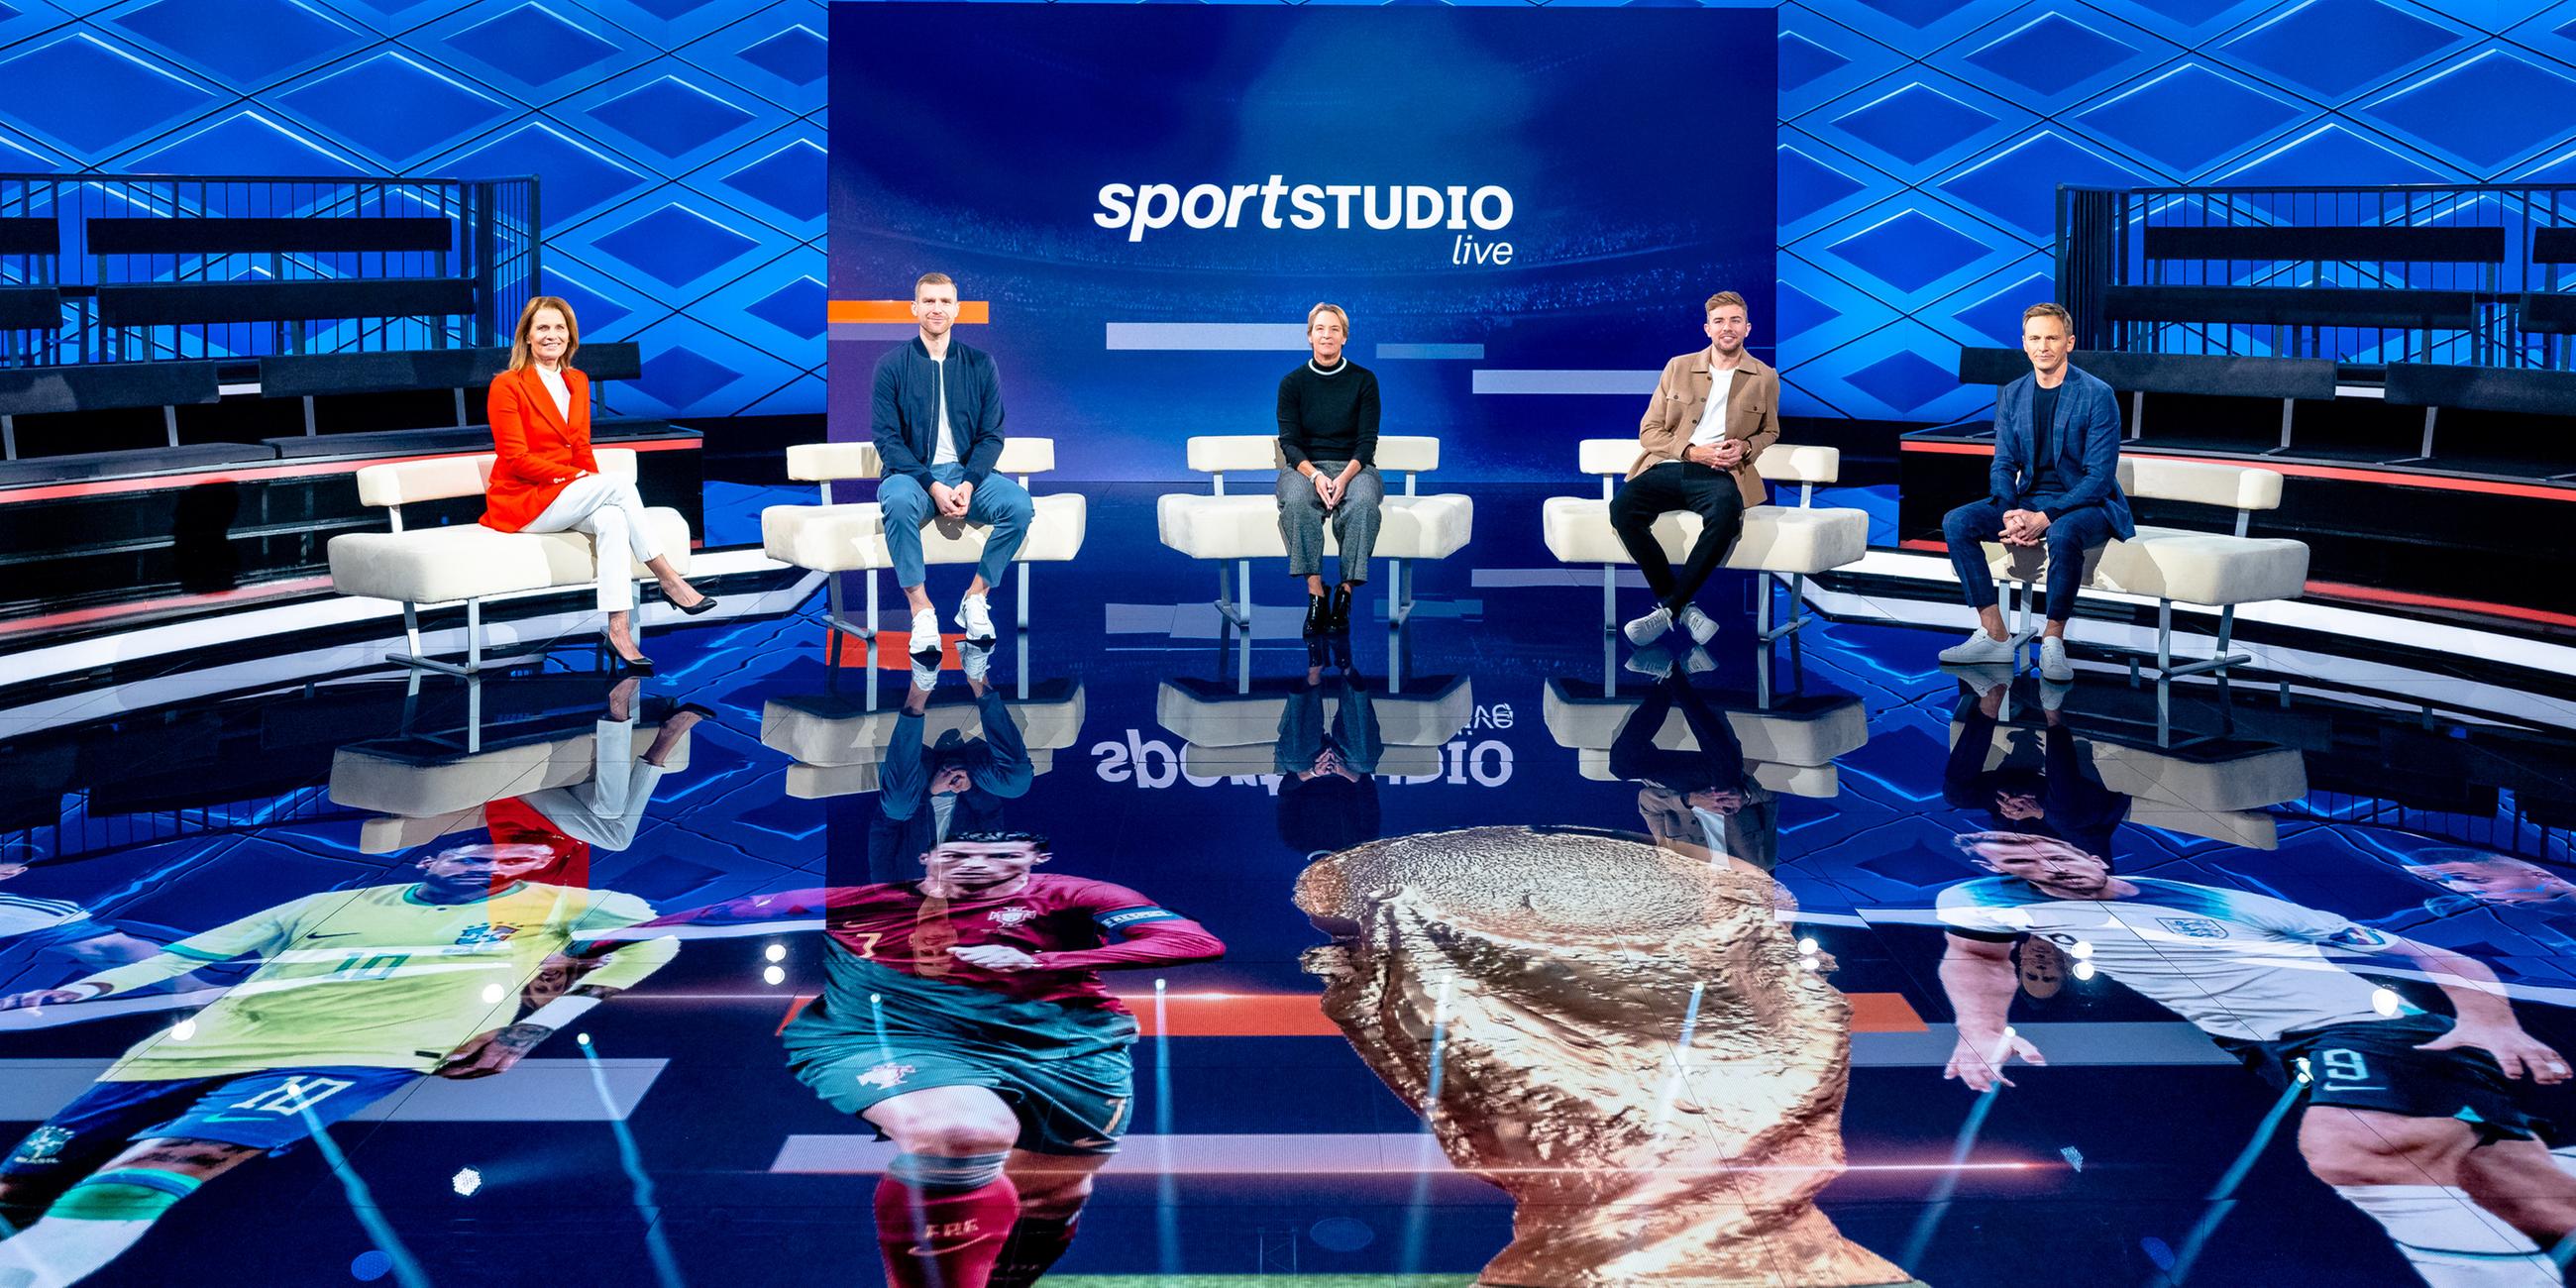 Das Moderatoren-/Expertenteam des ZDF bei der Fußball-WM 2022 in Katar, von links: Katrin Müller-Hohenstein, Per Mertesacker, Martina Voss-Tecklenburg Christoph Kramer und Jochen Breyer.